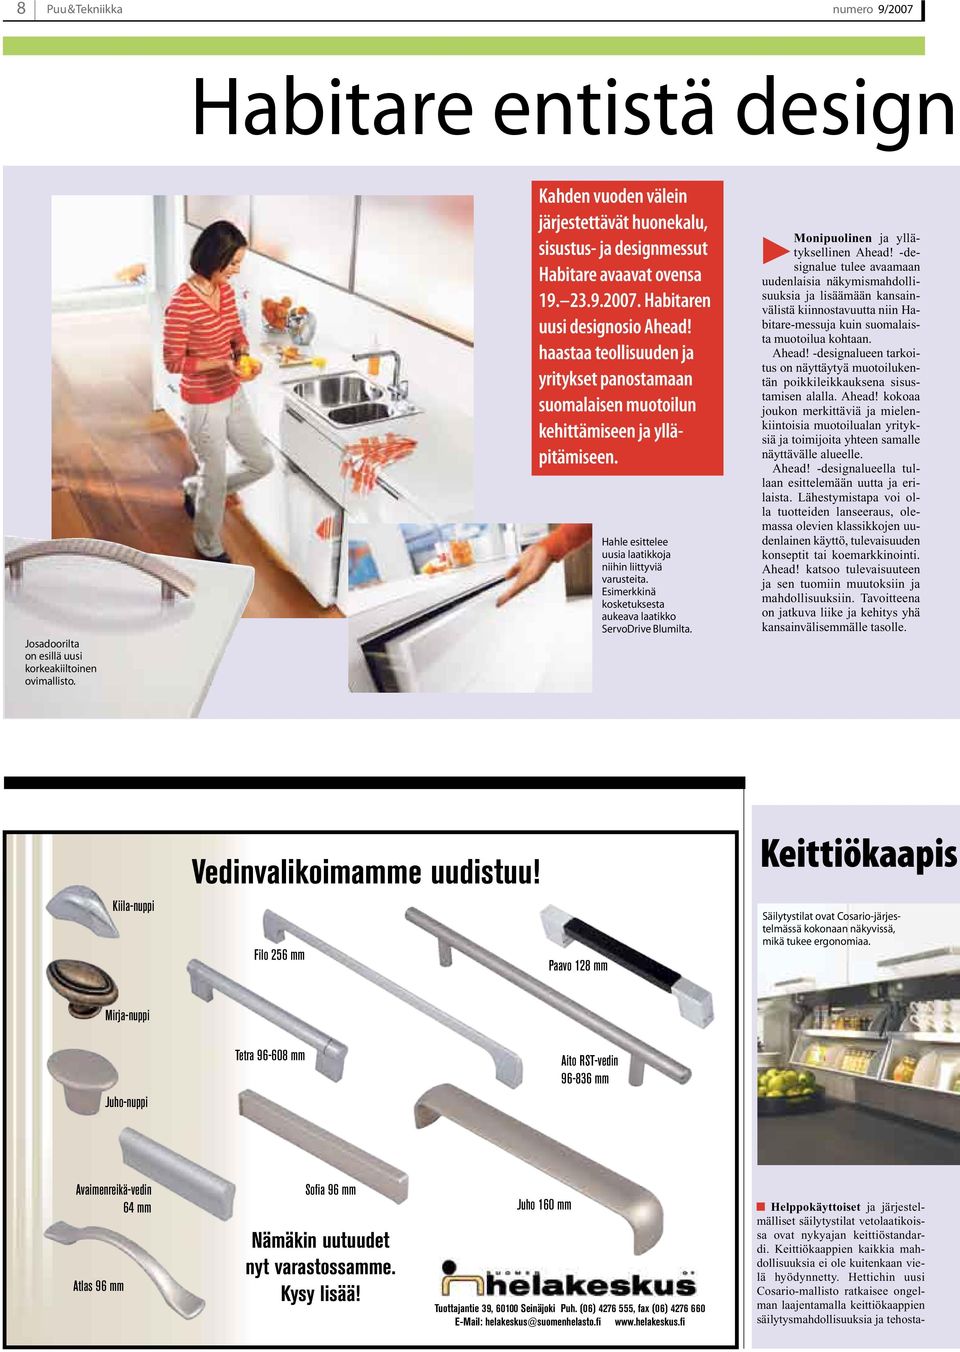 haastaa teollisuuden ja yritykset panostamaan suomalaisen muotoilun kehittämiseen ja ylläpitämiseen. Hahle esittelee uusia laatikkoja niihin liittyviä varusteita.